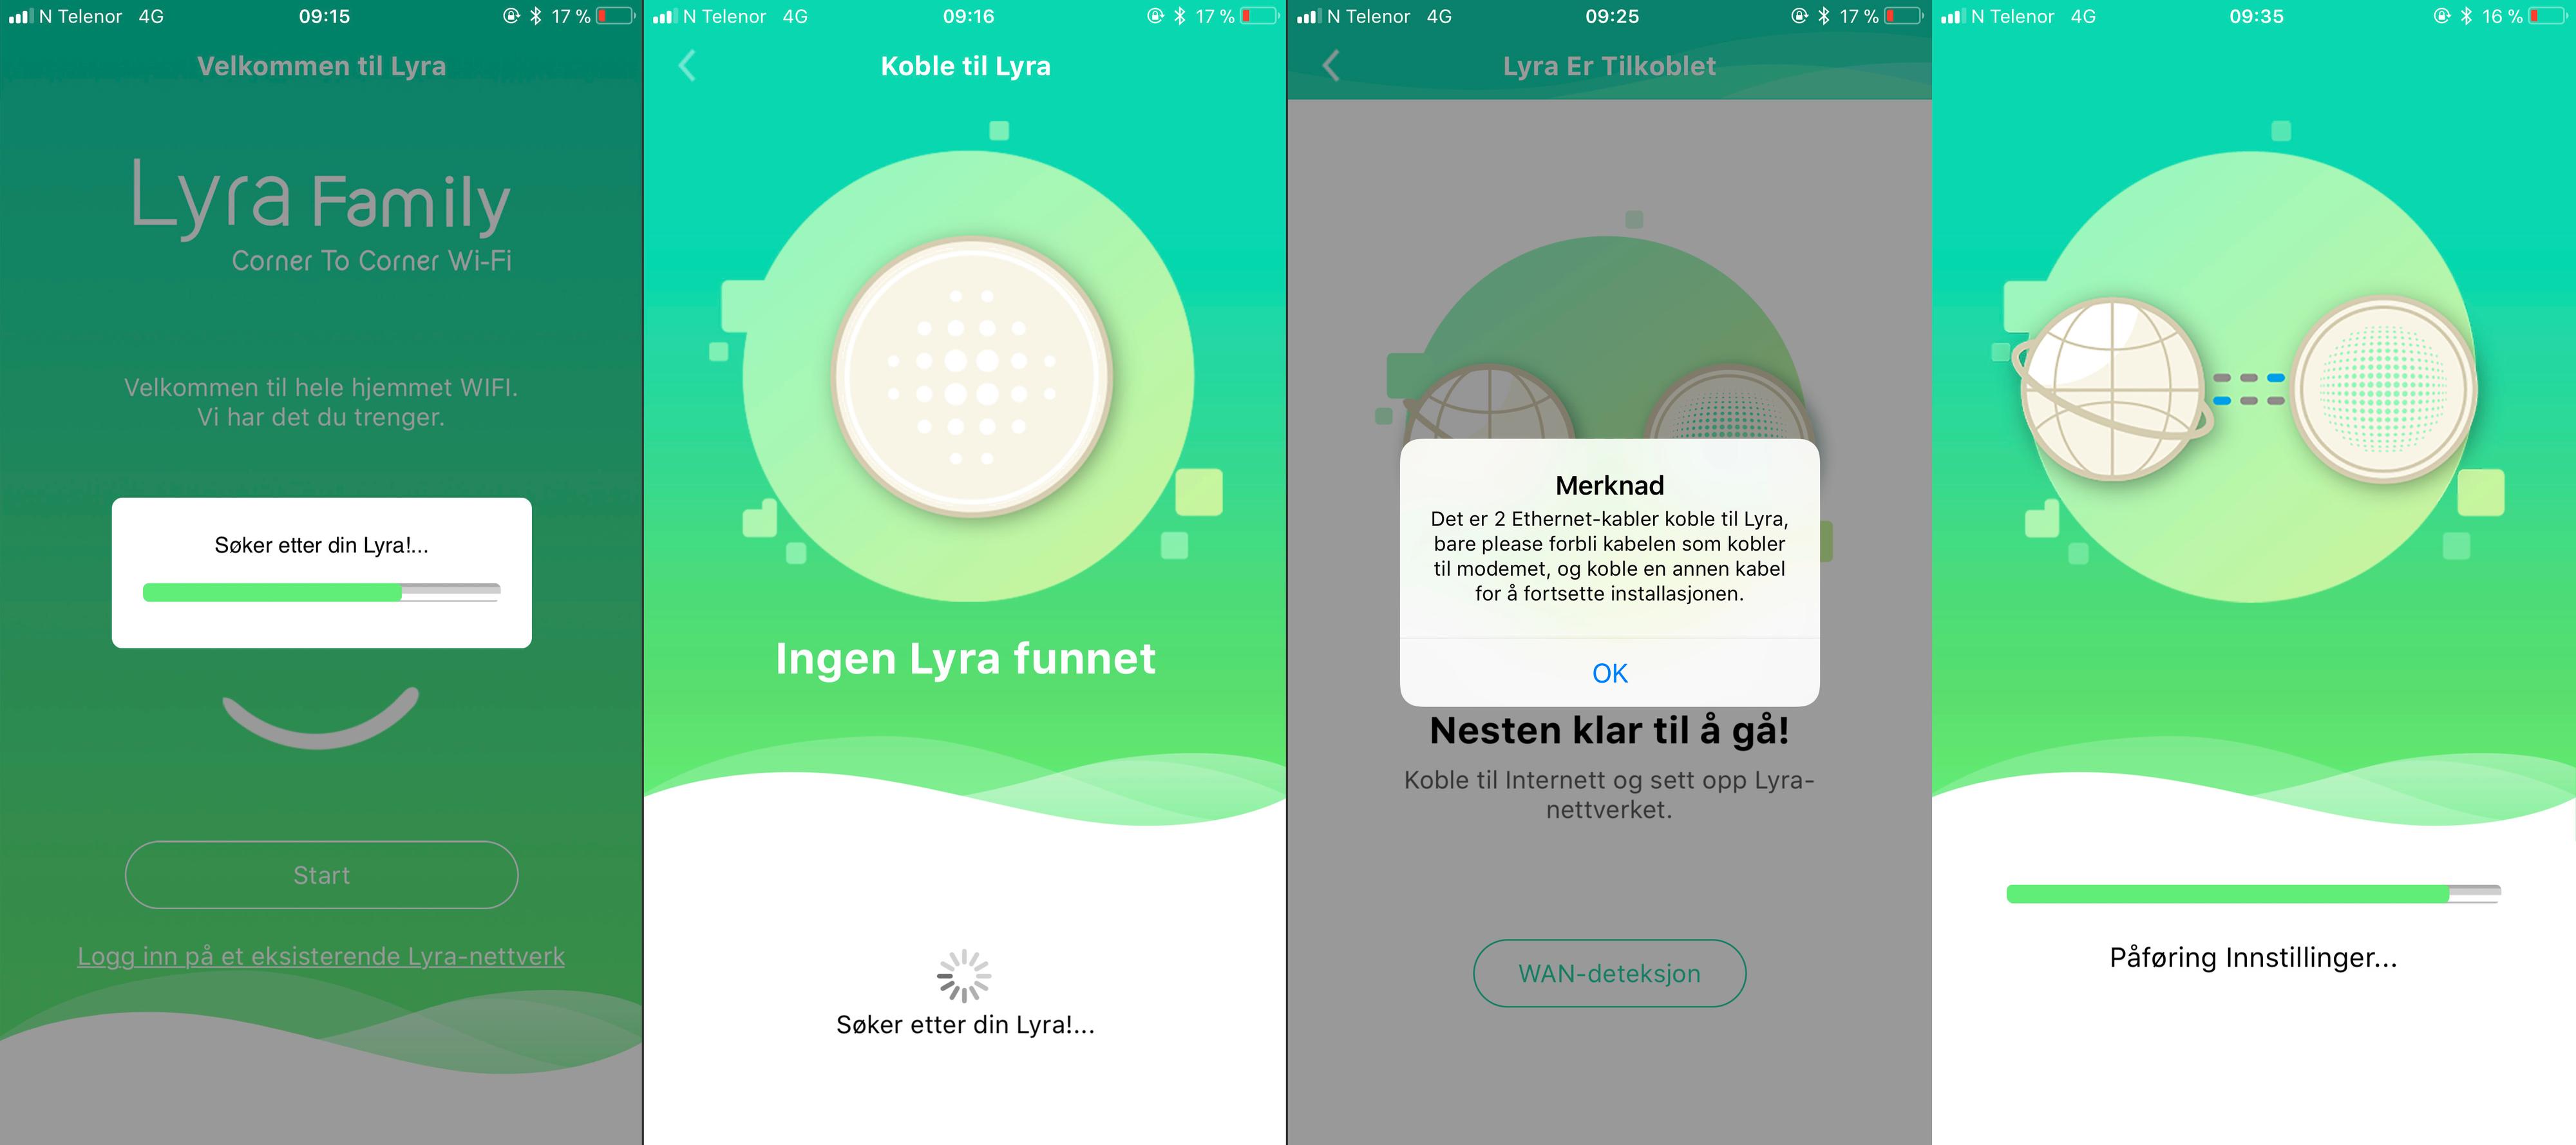 En stor del av dialogene i Lyra-appen til Asus ser ut som om de er oversatt i Google Translate.